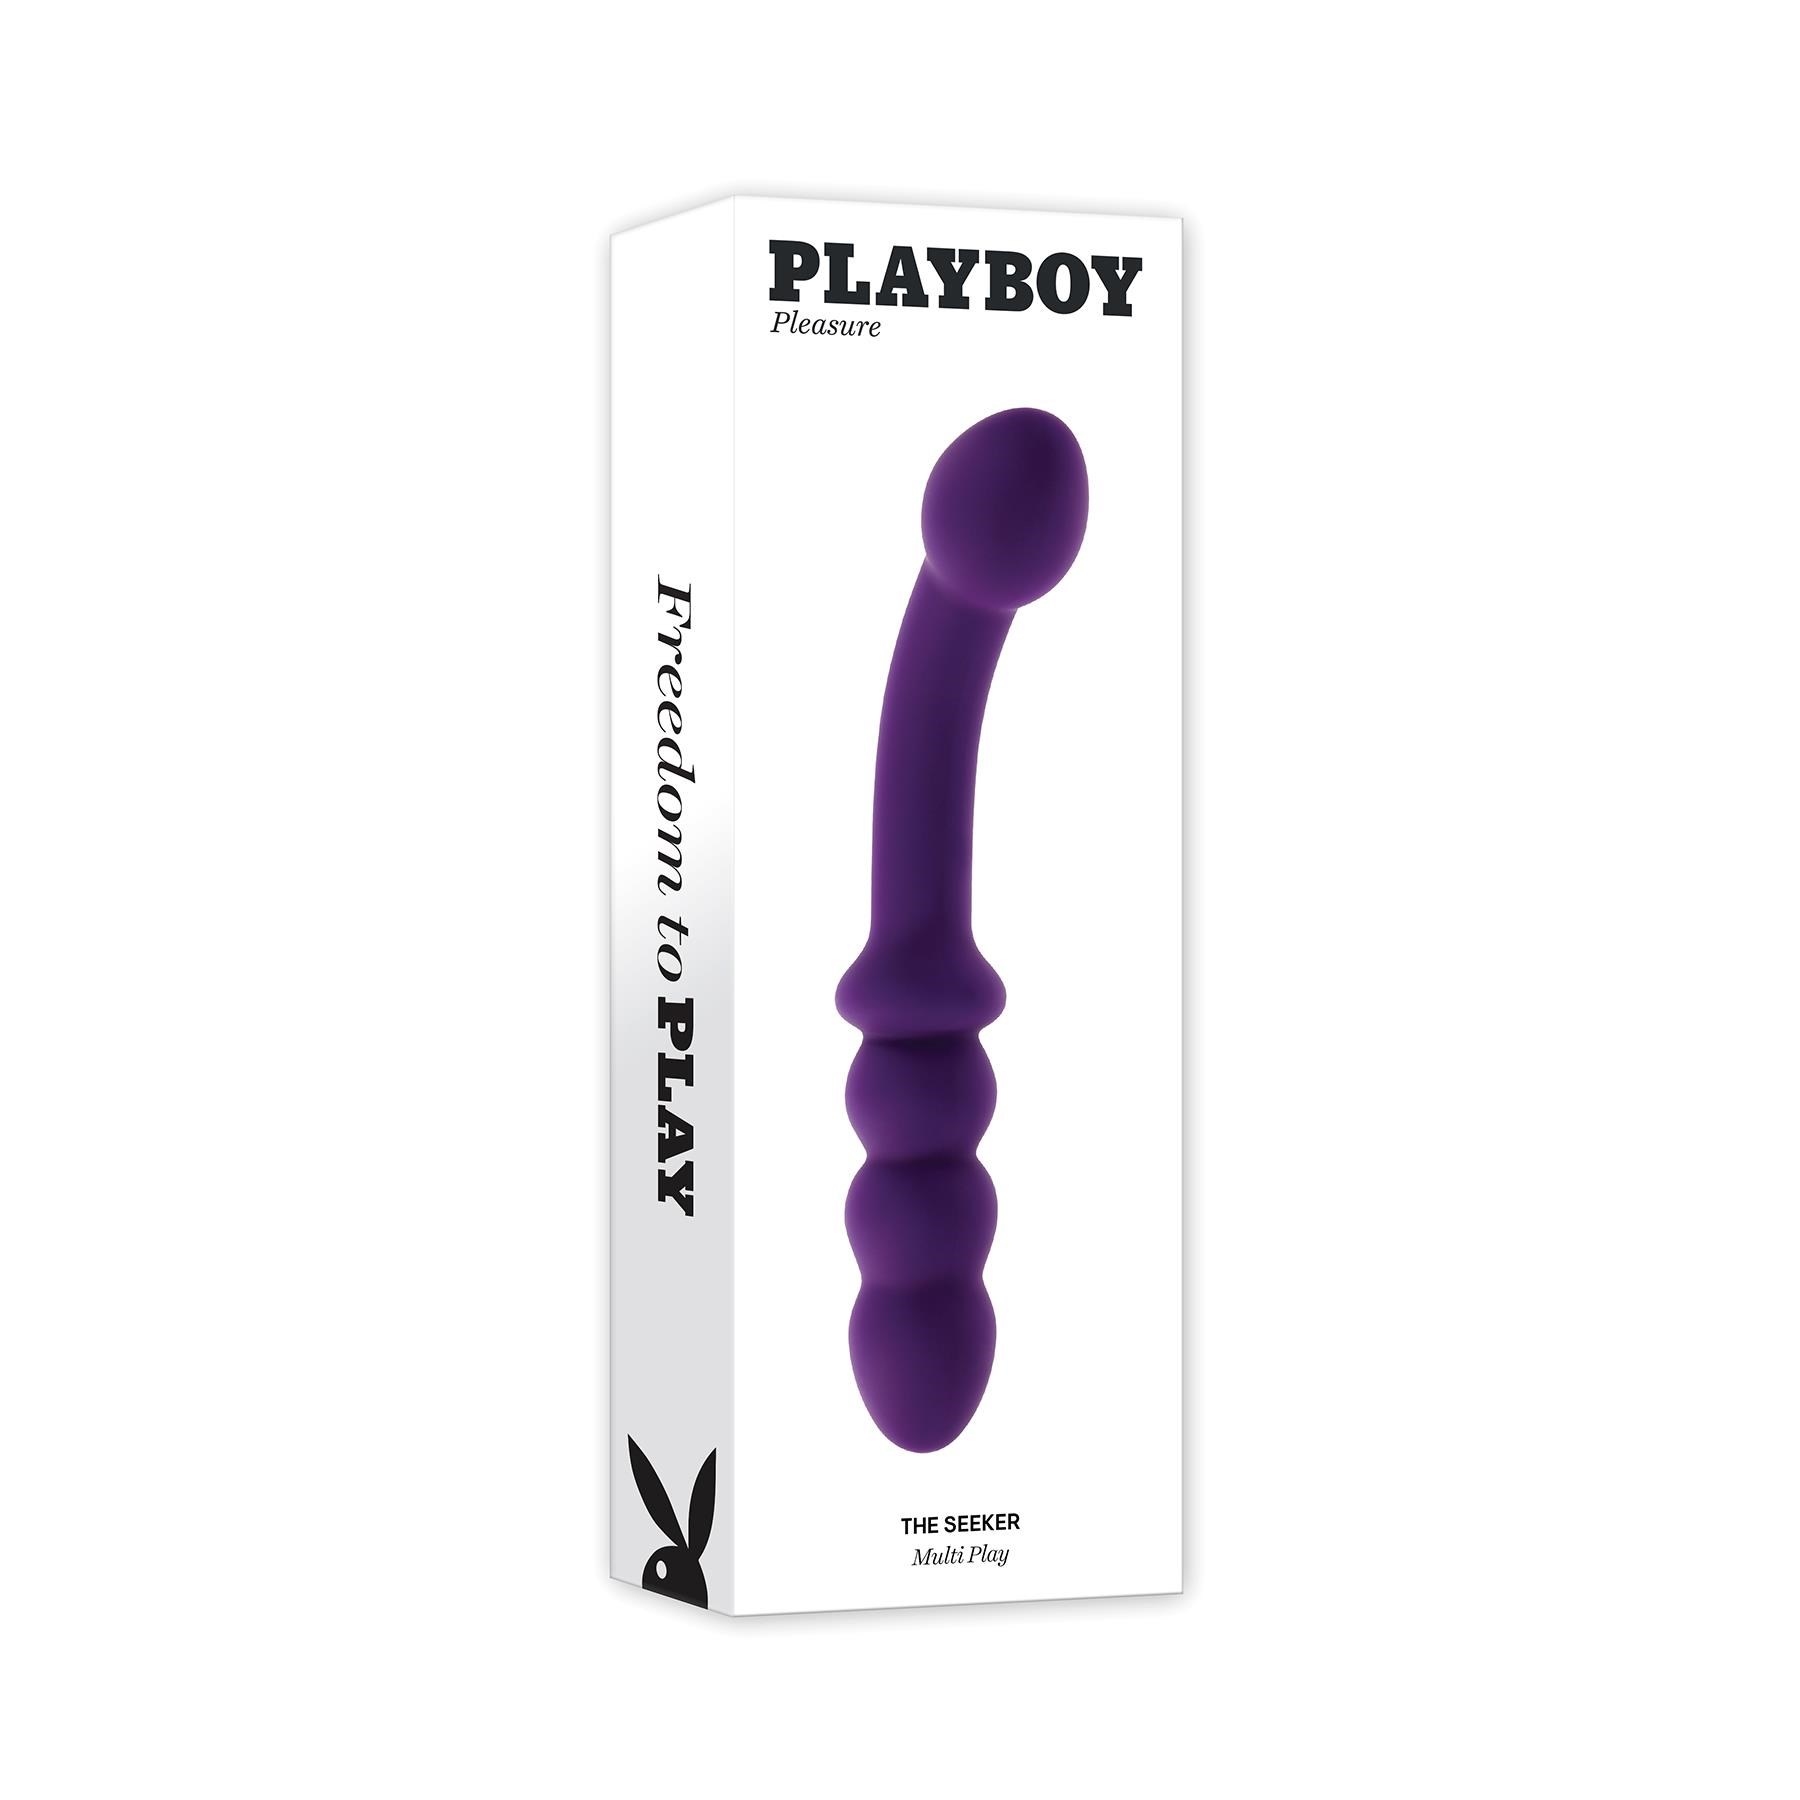 Playboy Pleasure The Seeker Dual Ended Vibrator - Packaging Shot